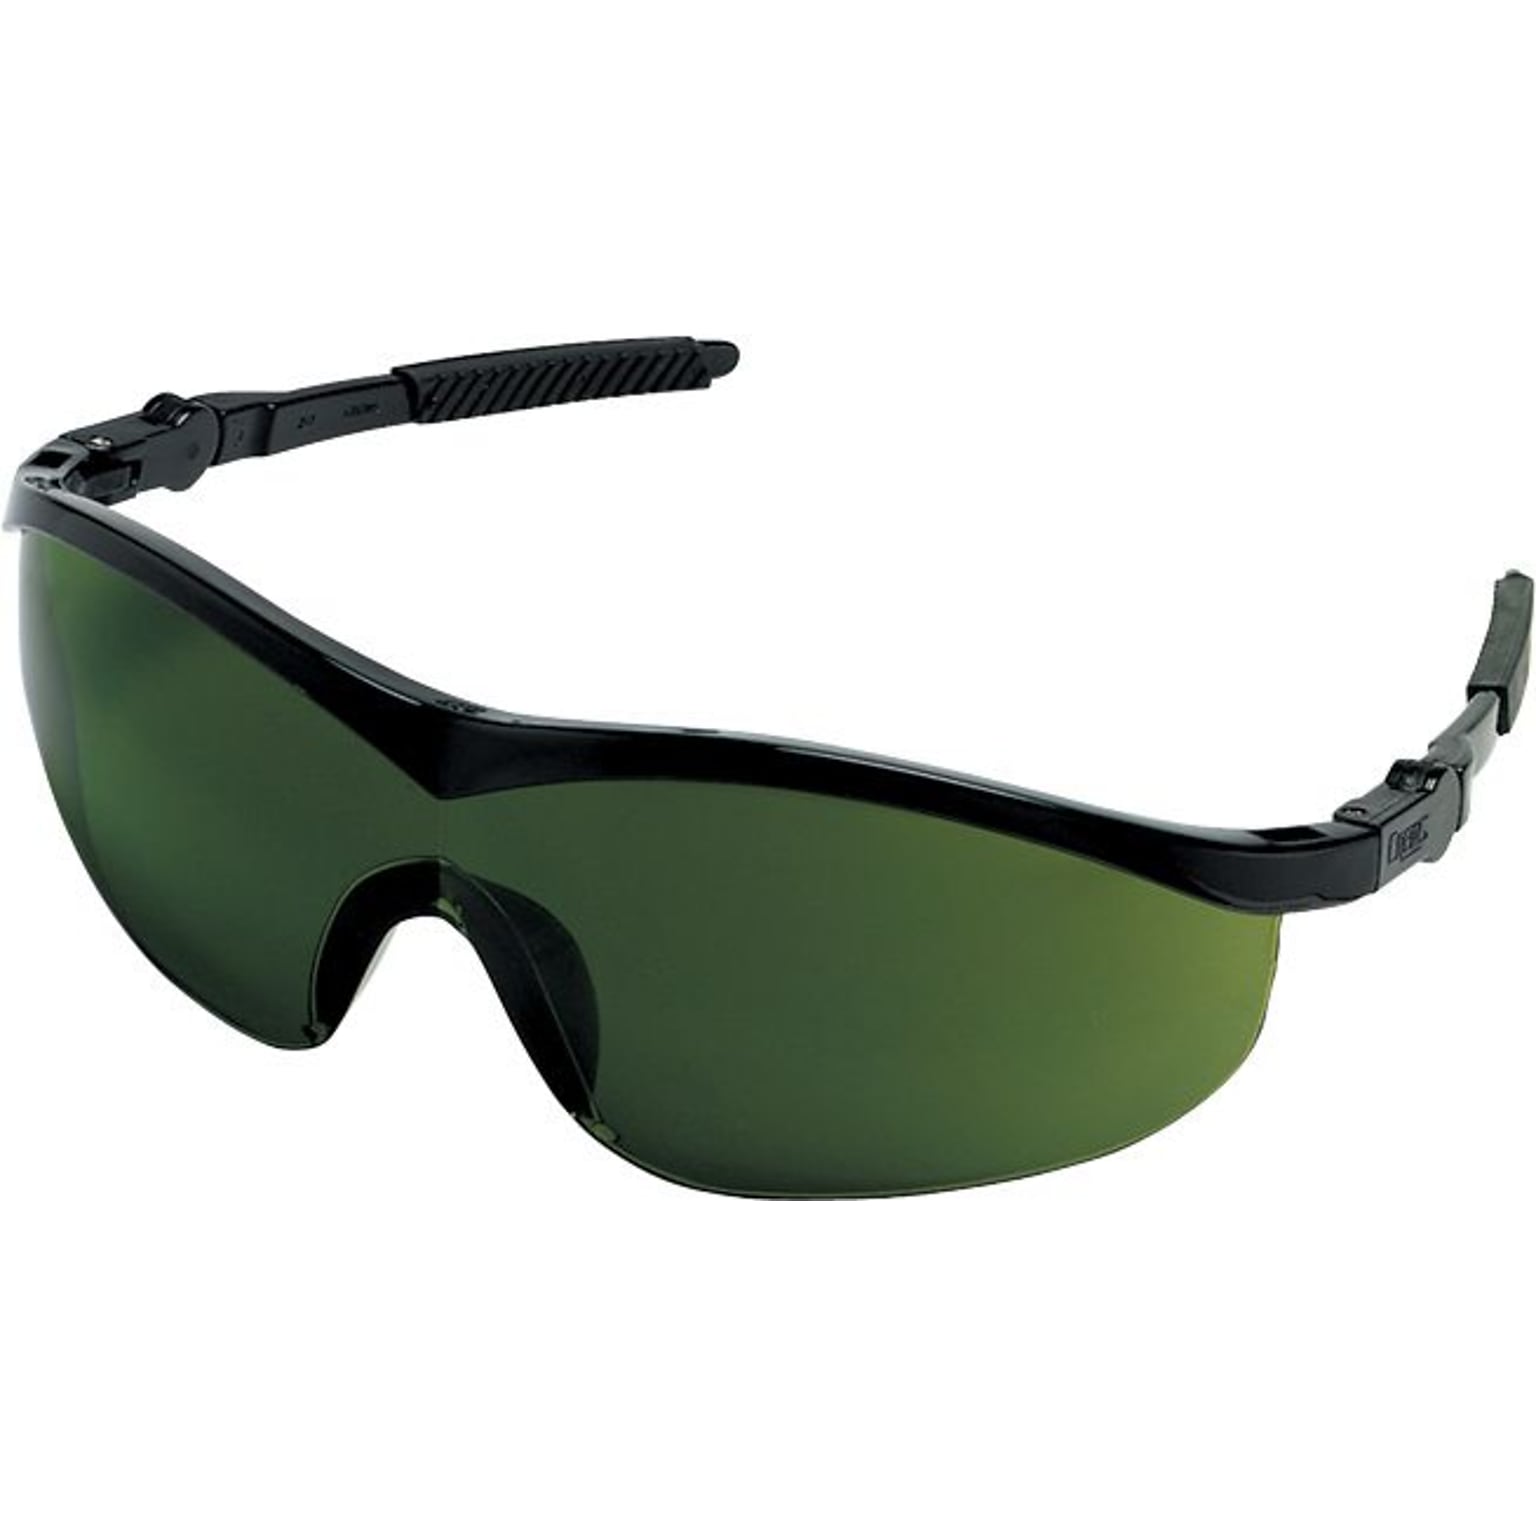 MCR Safety® Storm® Safety Glasses, Black, Clear, Anti-Fog (ST110AF)